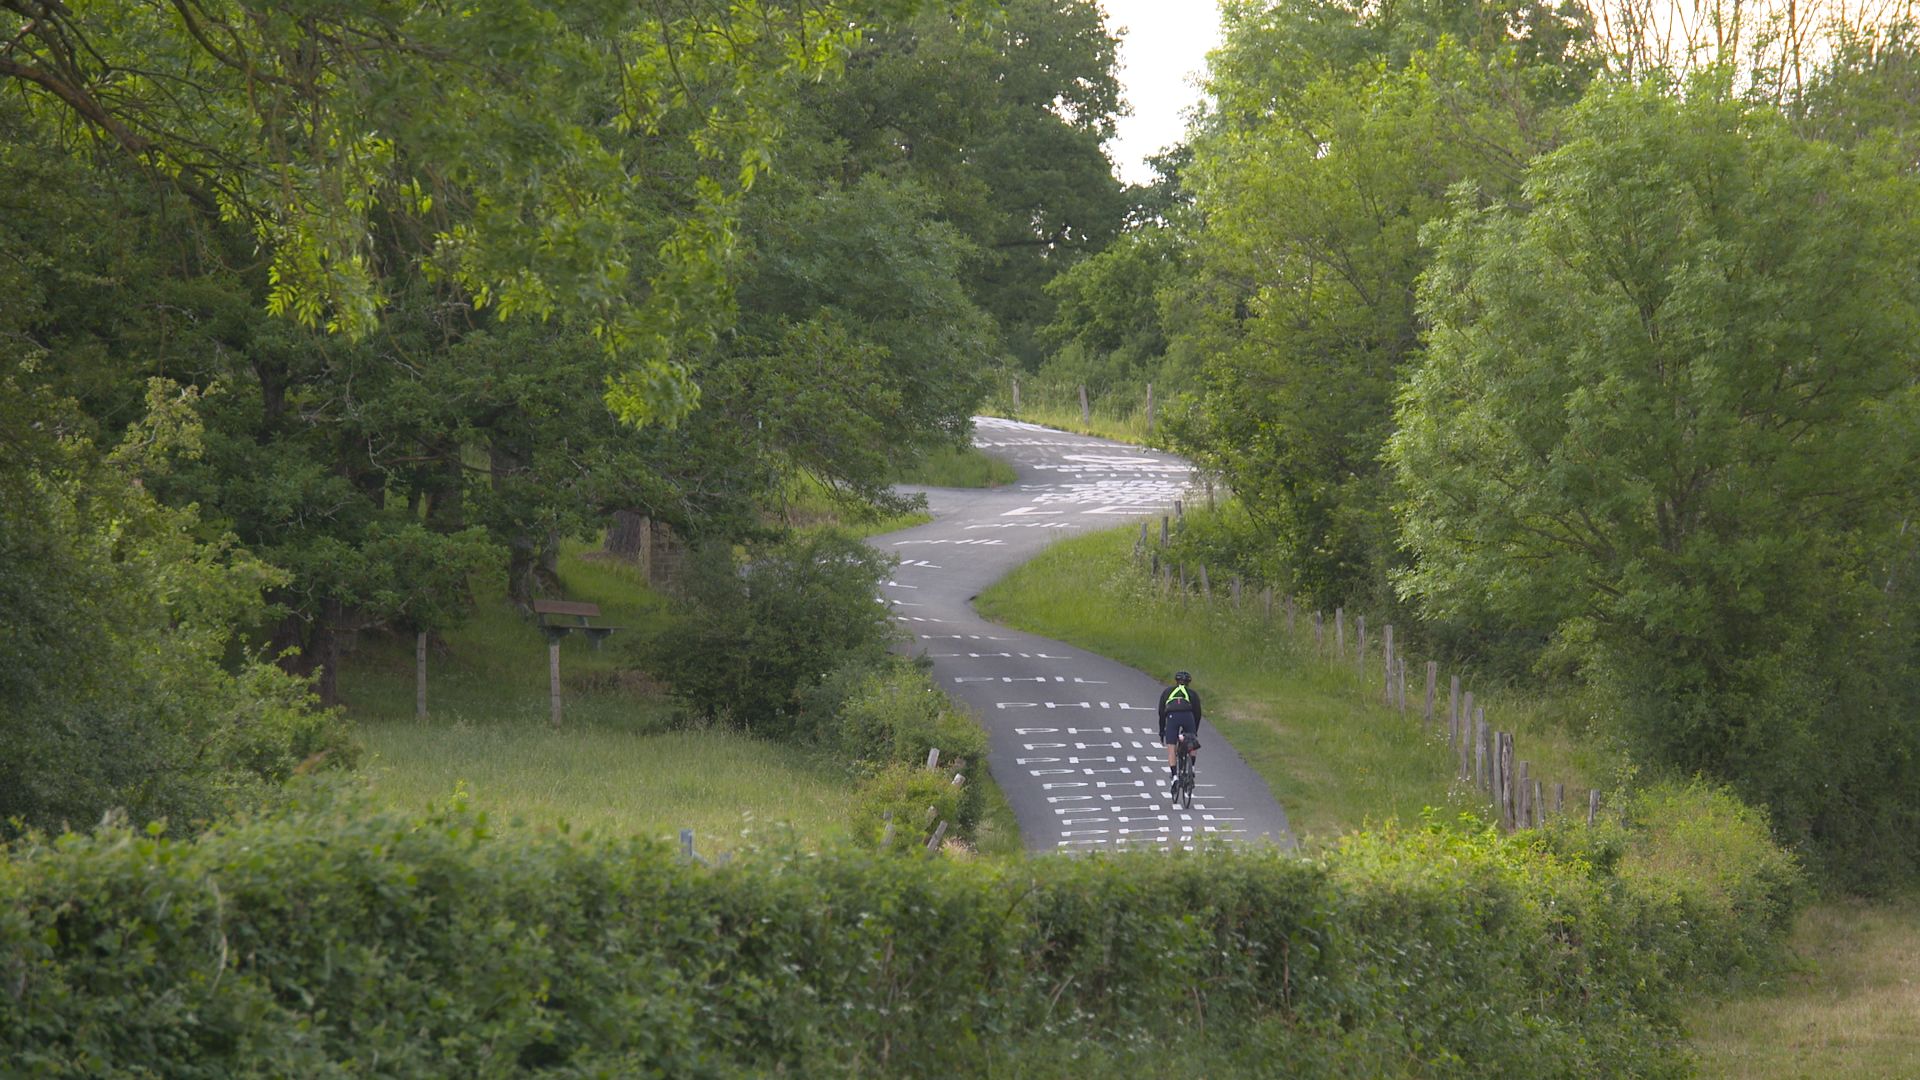 Le Koppenberg, le Mur de Grammont, le Mur de Huy ou encore La Redoute figurent sur le parcours de la Race Across Belgium, une épreuve extrême d'ultracyclisme